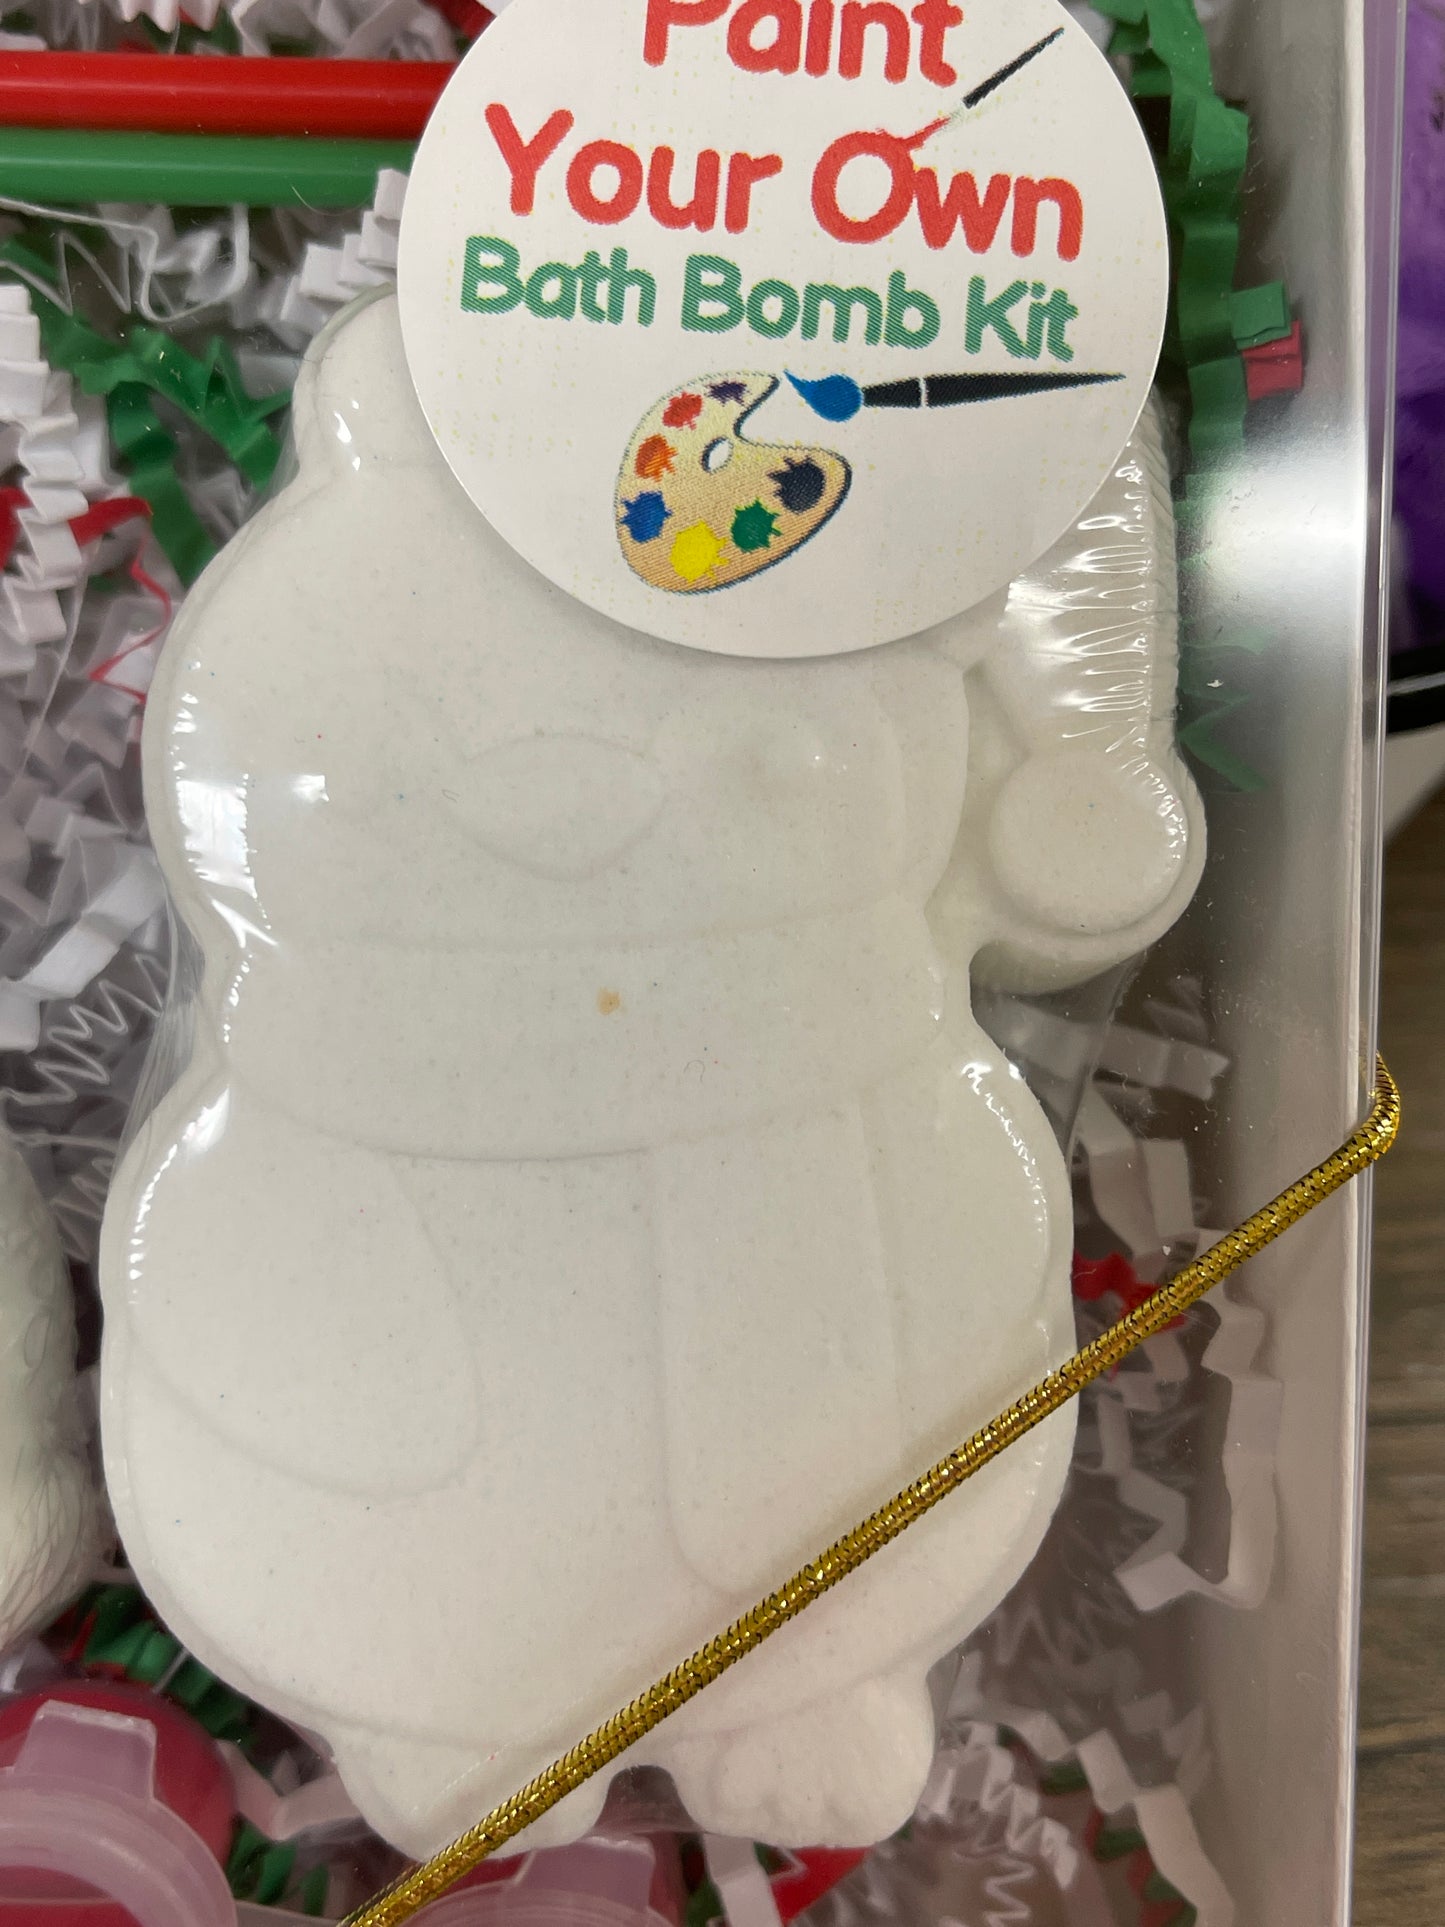 Paint Your Own Bath Bomb Kit